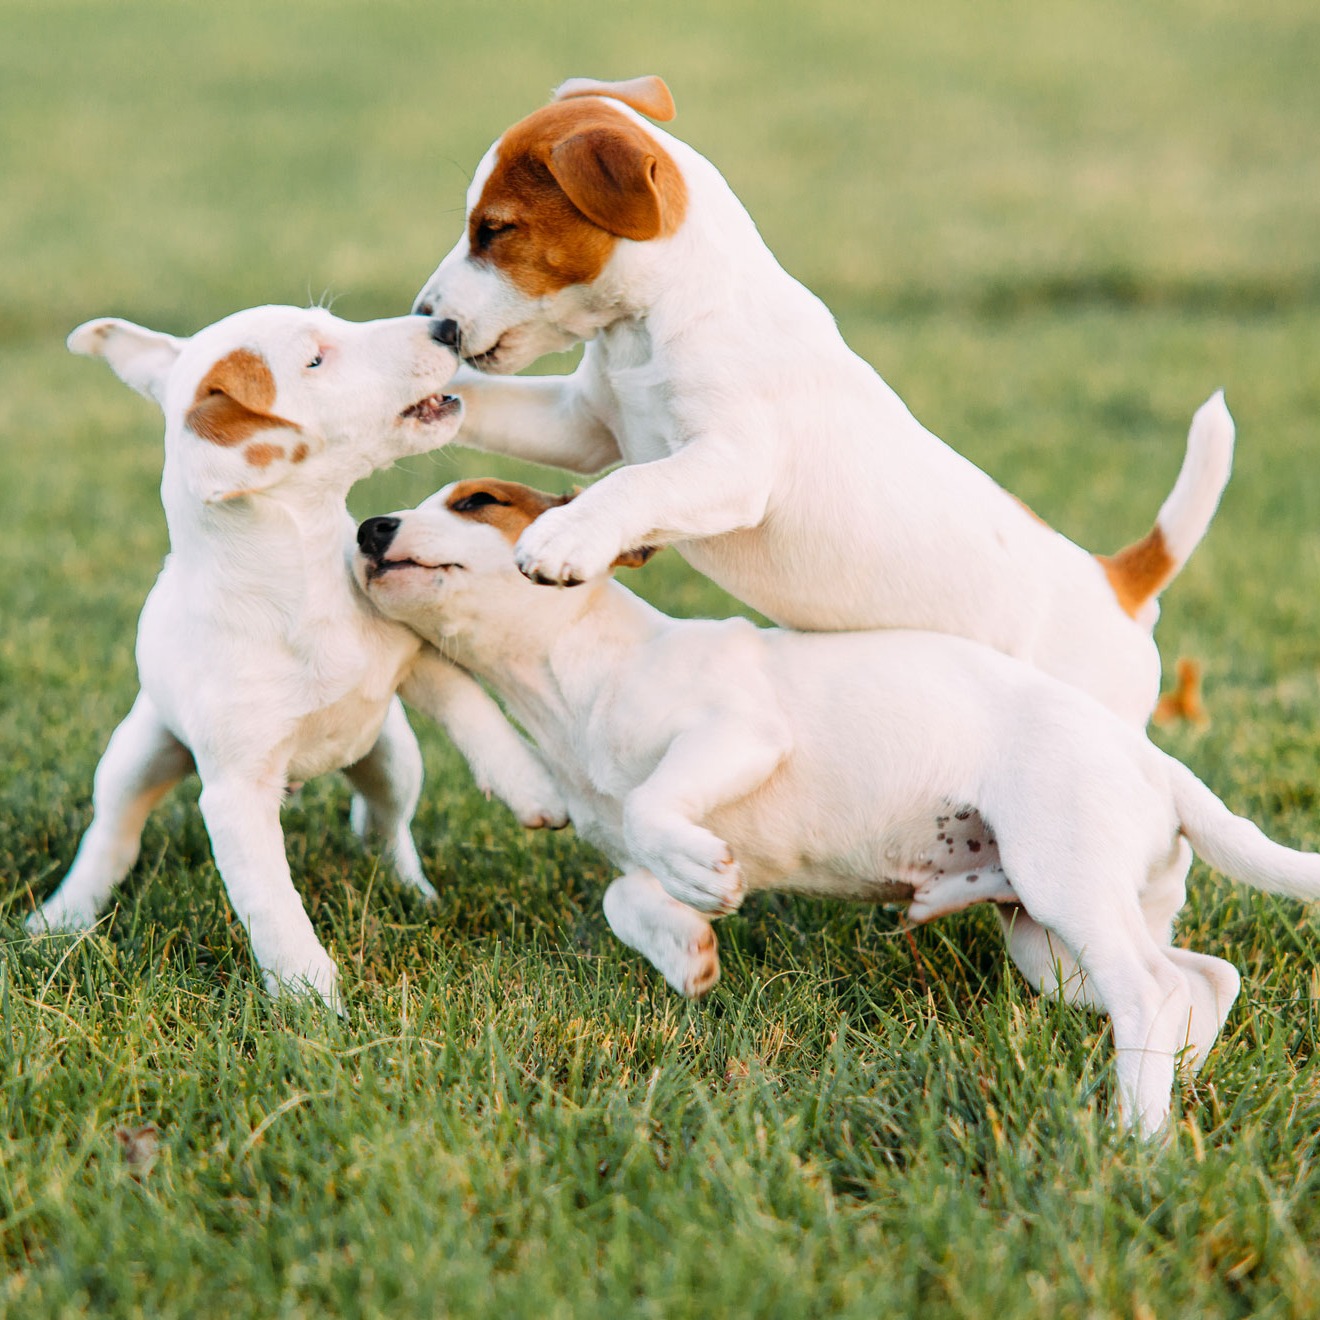 Puppy’s aan het spelen in huiselijke omgeving – Aveve